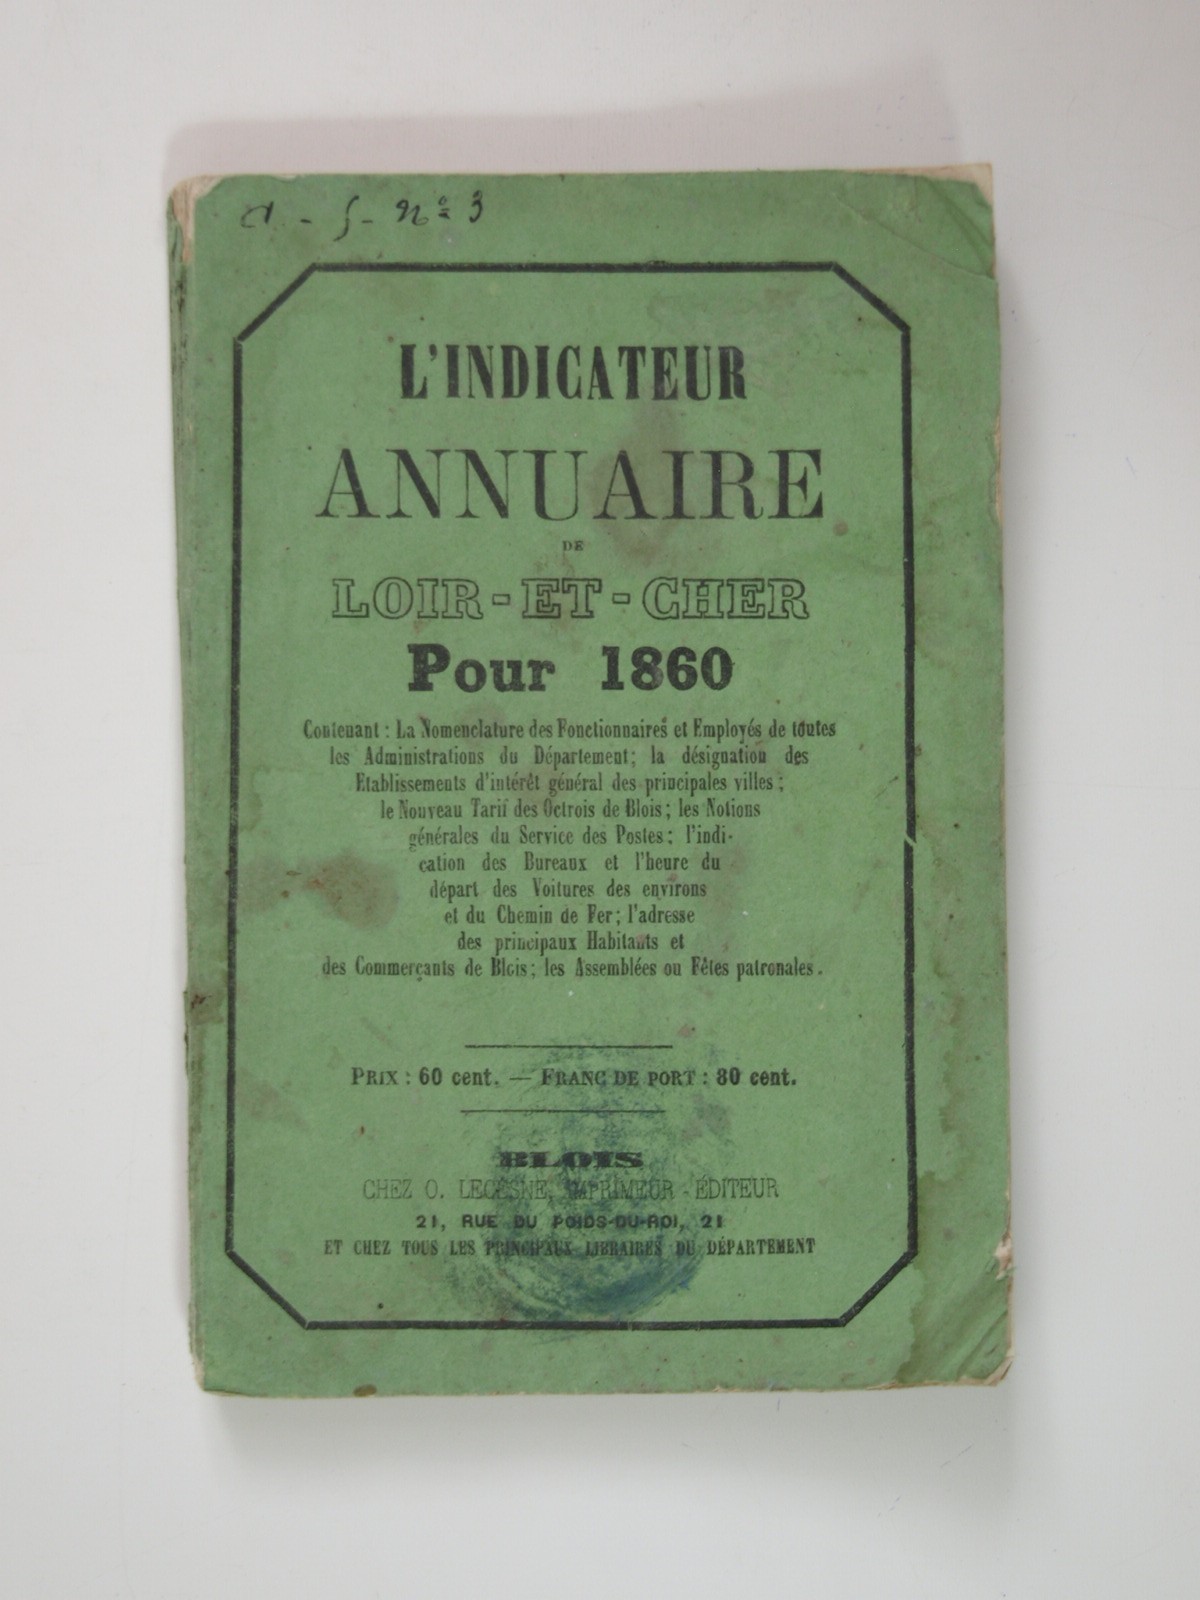 L'indicateur annuaire de Loir-et-Cher pour 1860